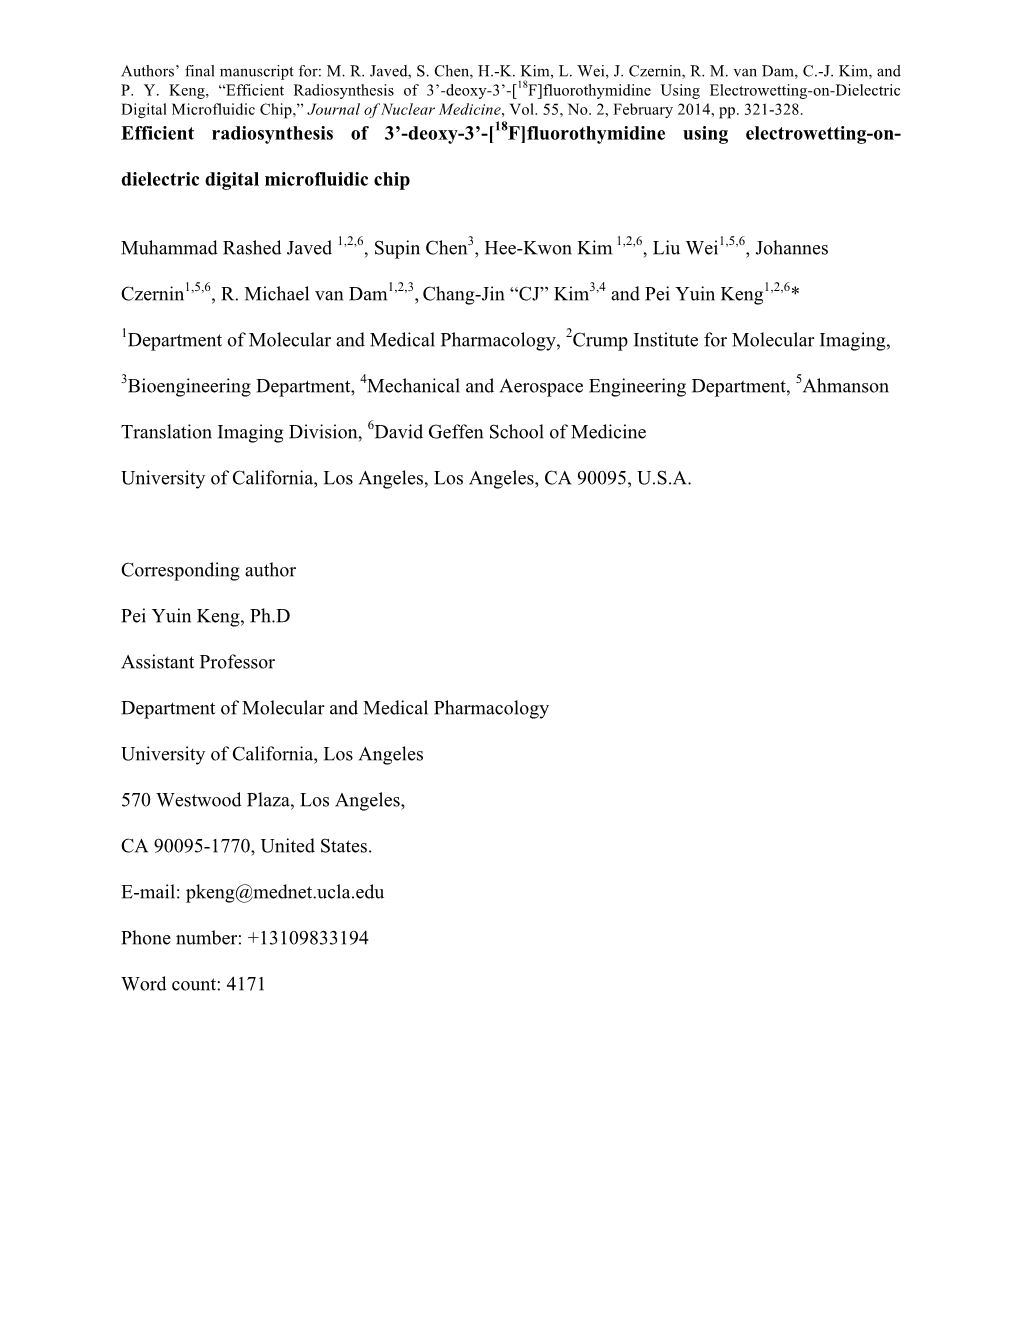 P-Keng JNM 2013 Manuscript Revised V2